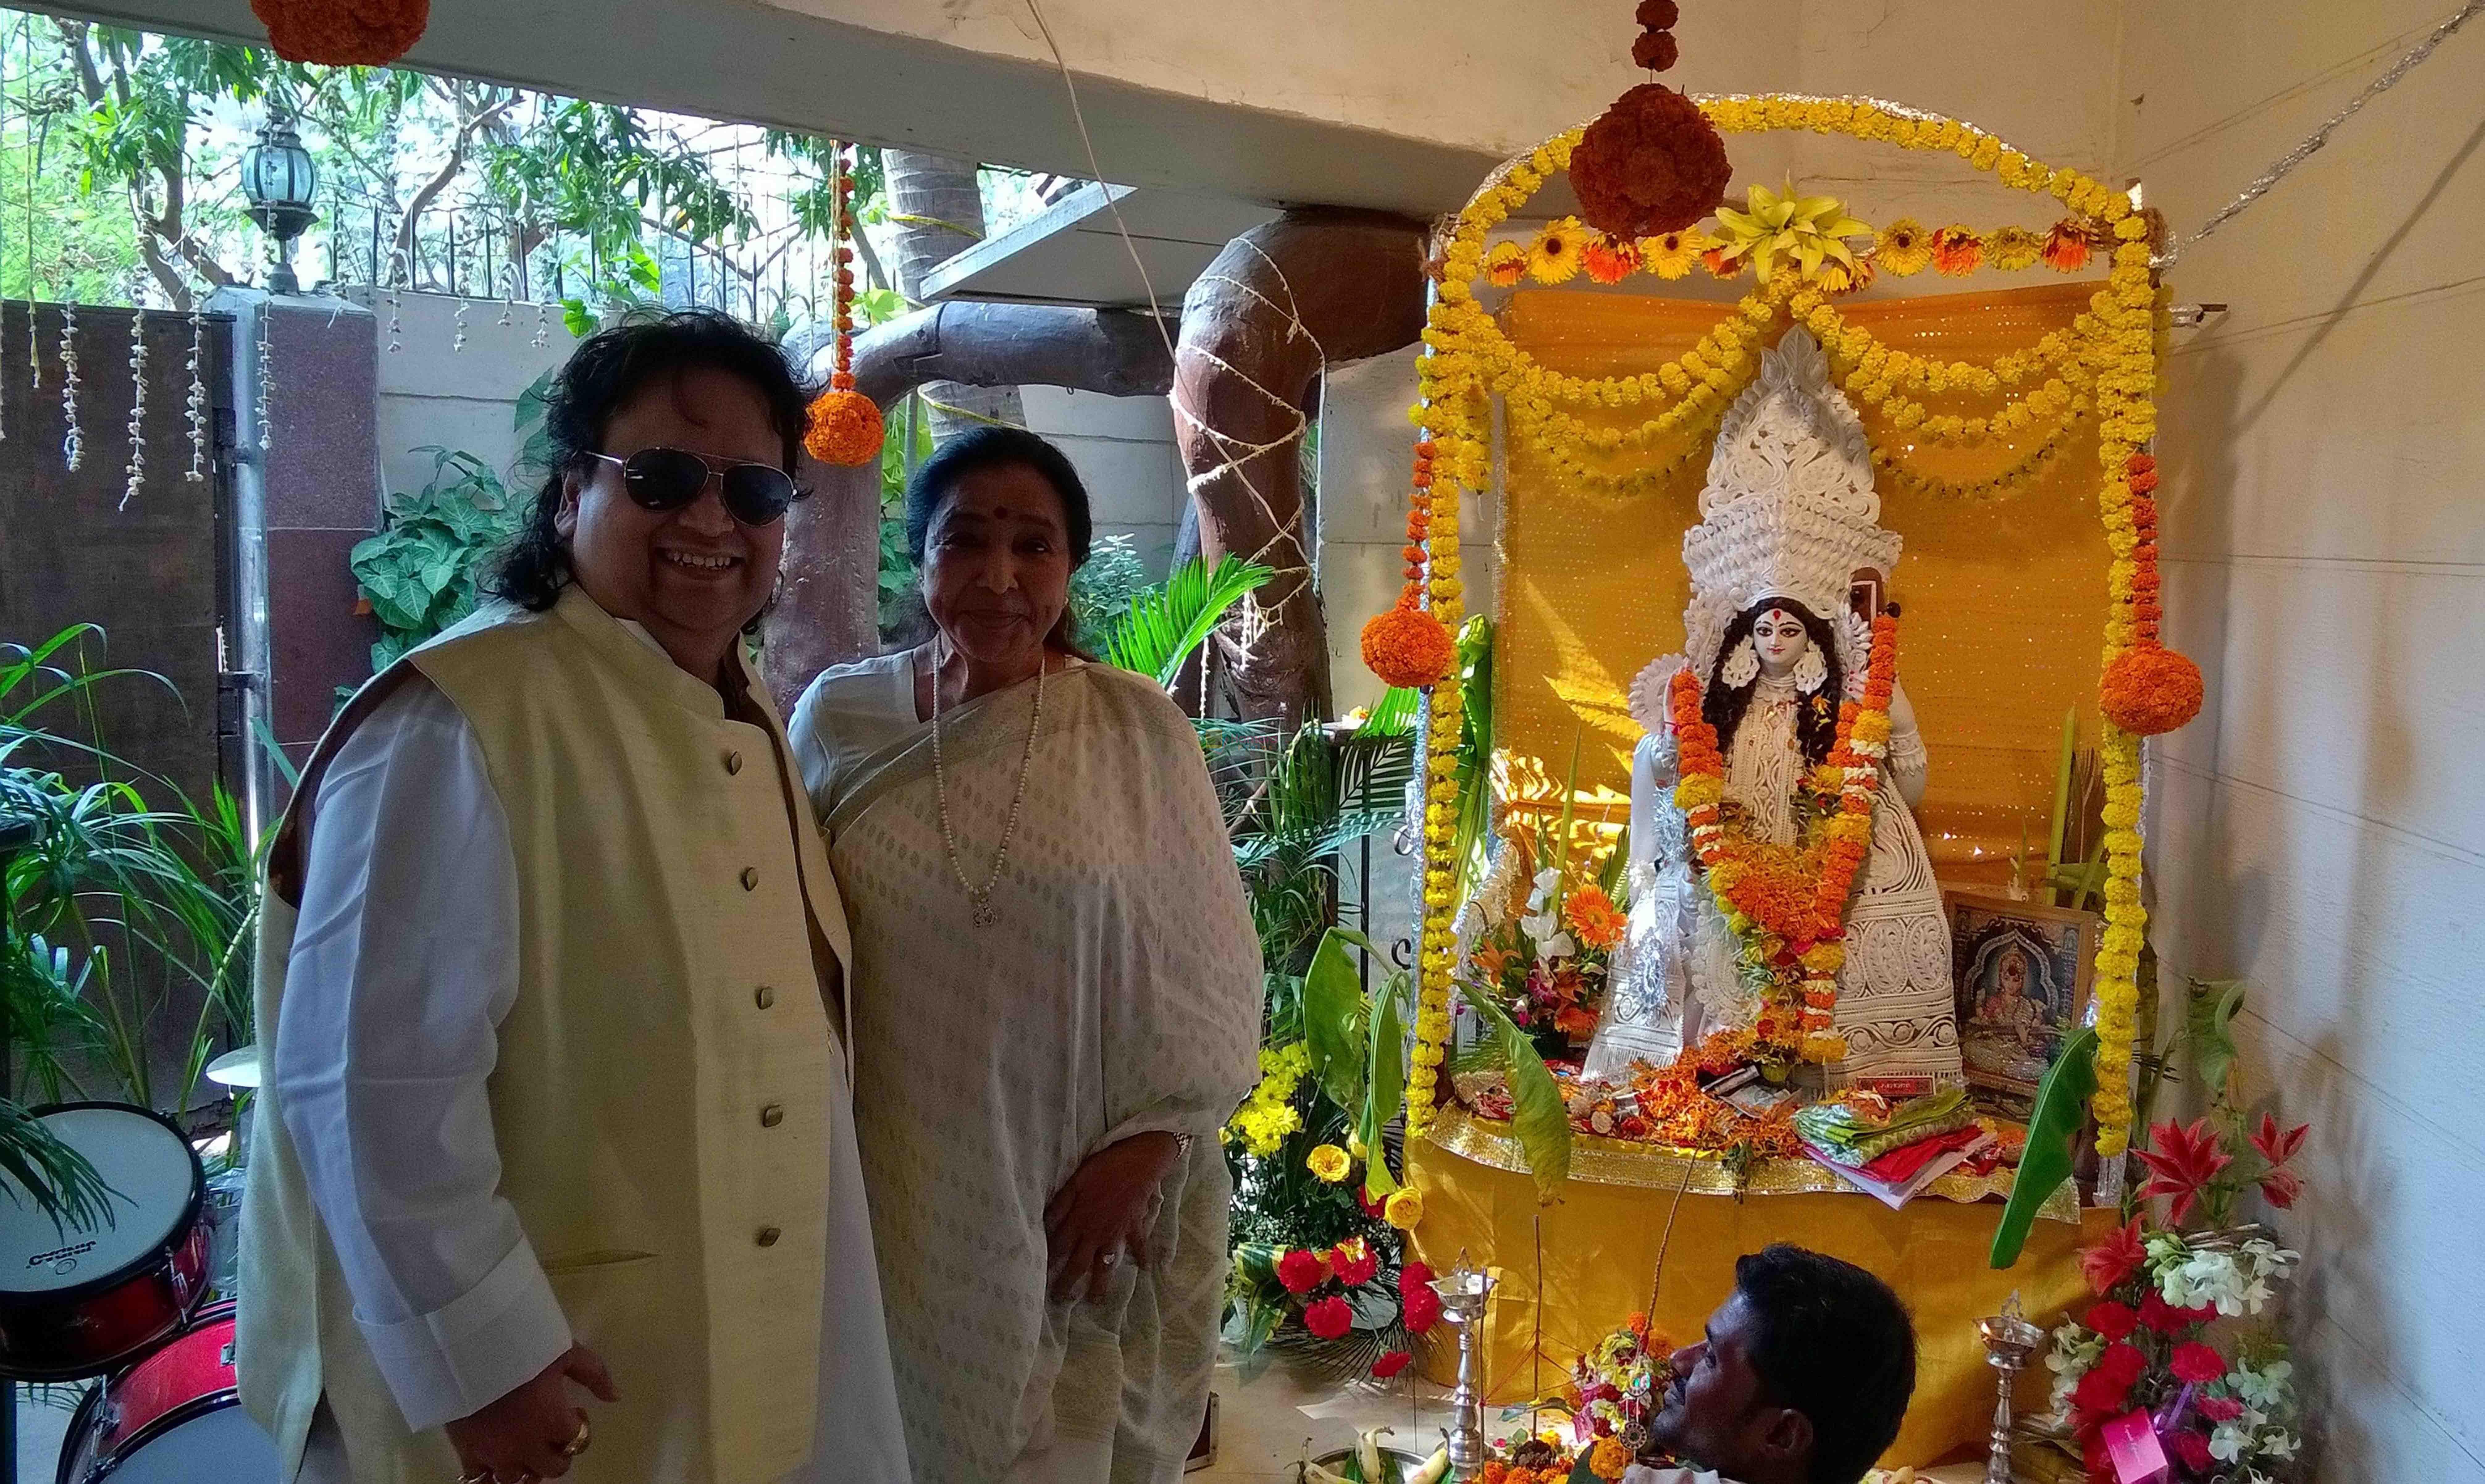 Bappi Lahiri and Asha Bhosle at Bappi Lahiri's Saraswati Puja